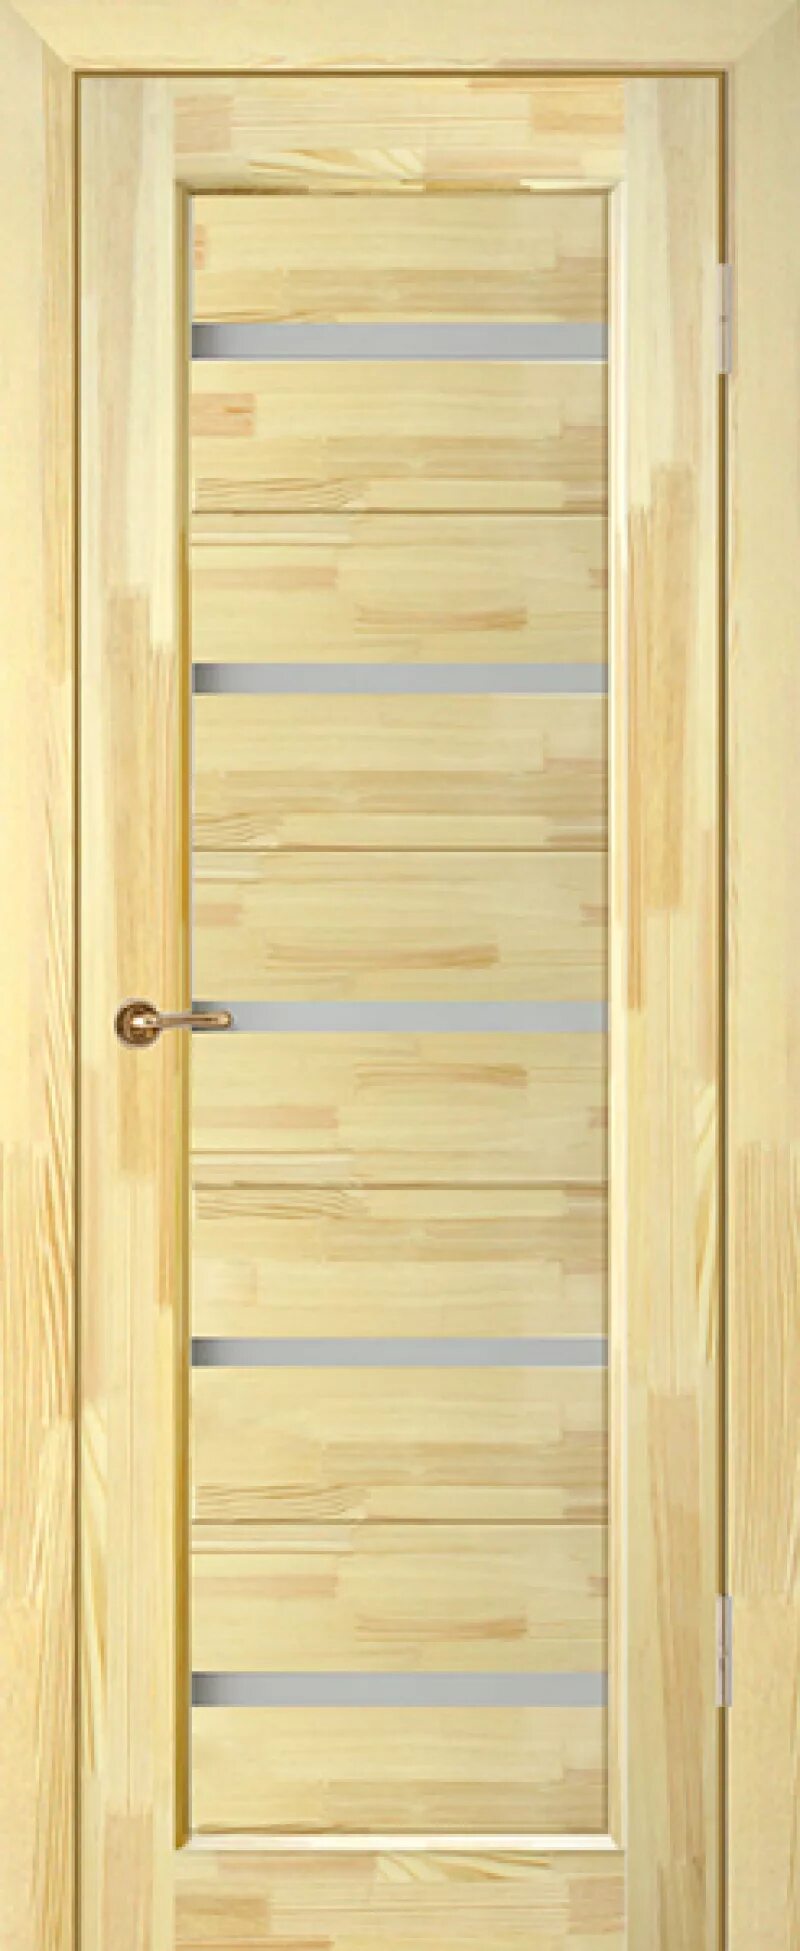 Межкомнатная дверь массив сосны Вега-5. Двери межкомнатные Вега 5. Двери из массива сосны ПМЦ-7 (неокрашенная). Межкомнатная дверь Юркас массив сосны Вега-3. Купить межкомнатную дверь из сосны